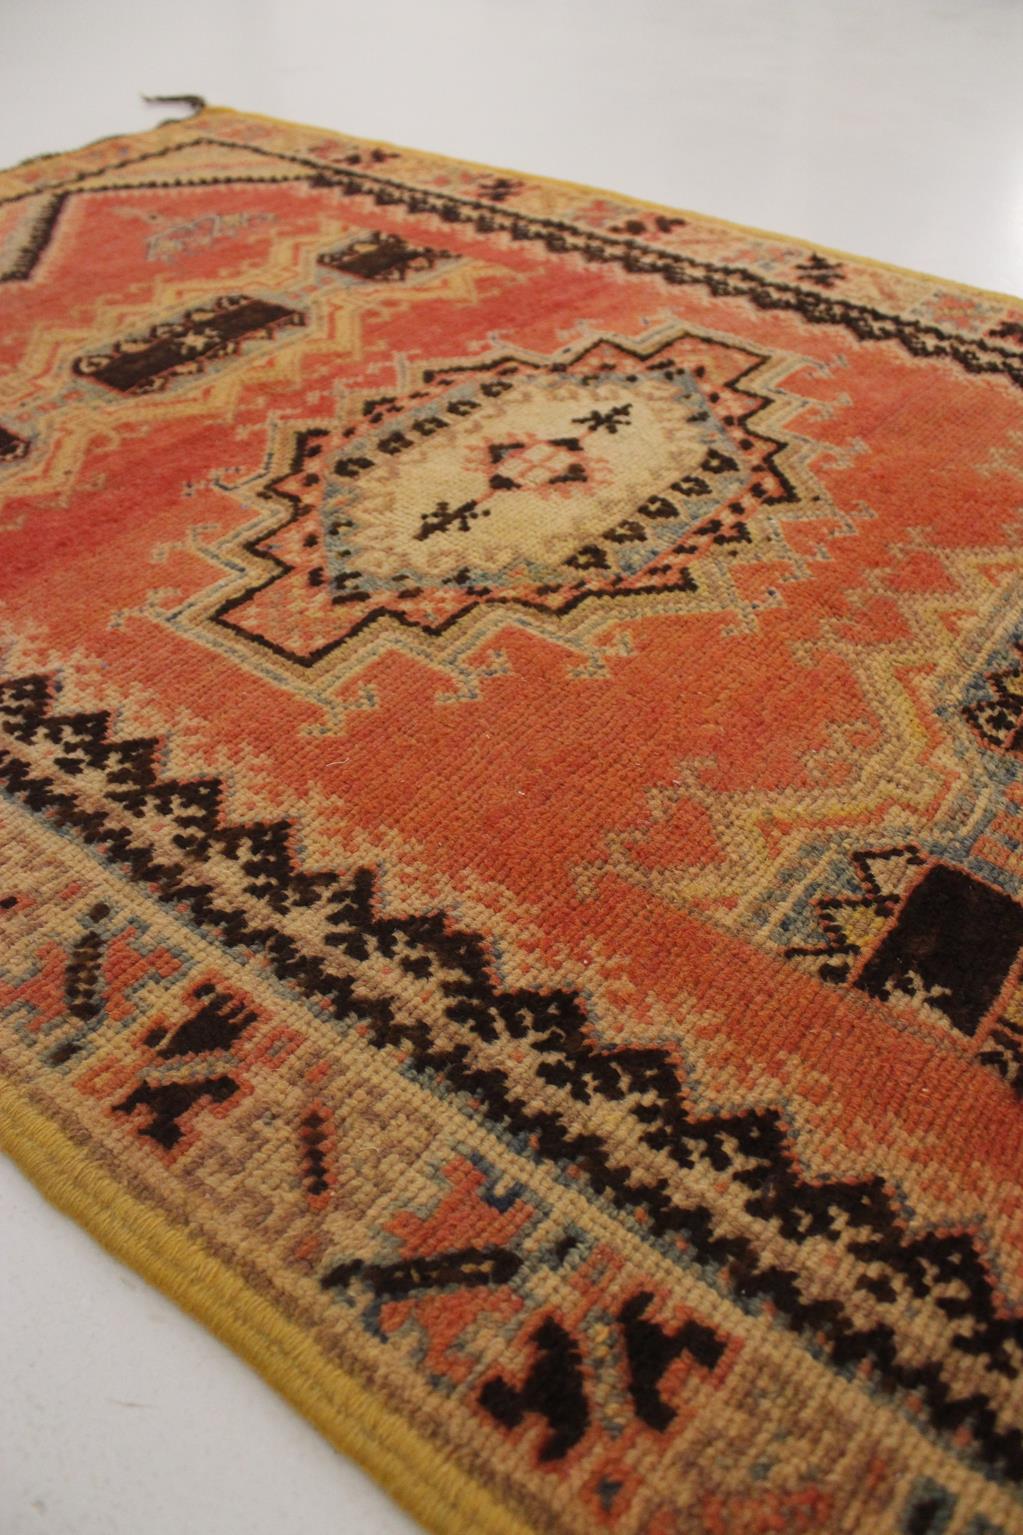 Vintage Moroccan Taznakht rug - Blood orange/black - 3.2x5.8feet / 100x178cm For Sale 6